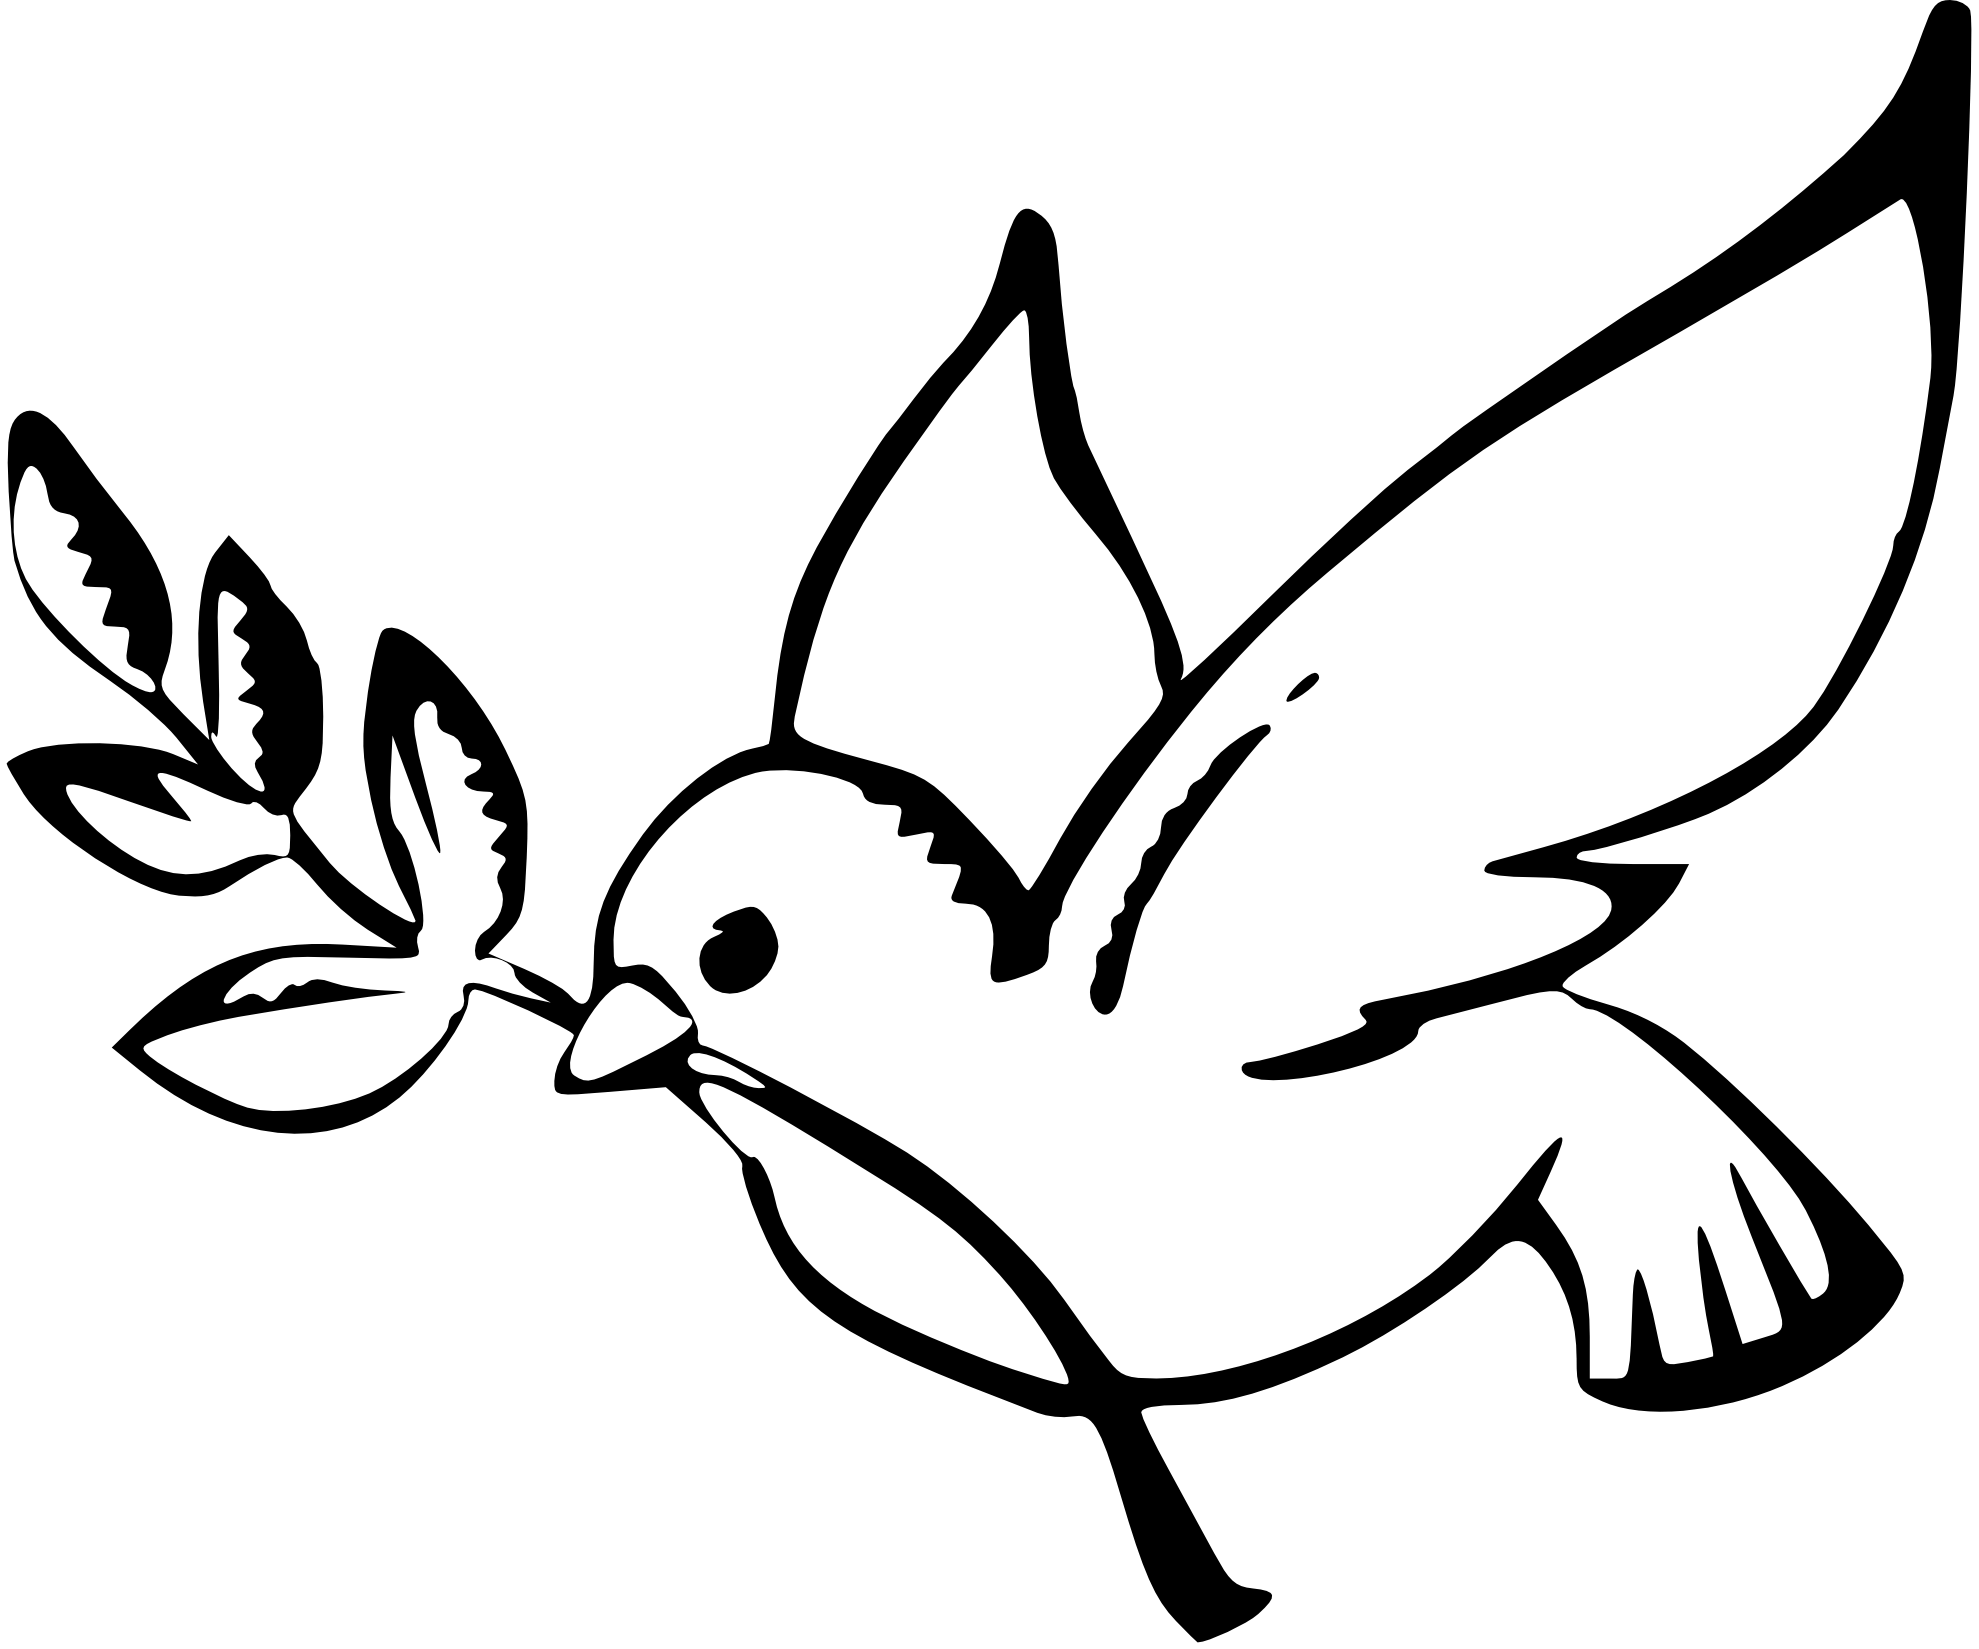 Paloma símbolo de la Paz PNG transparente.